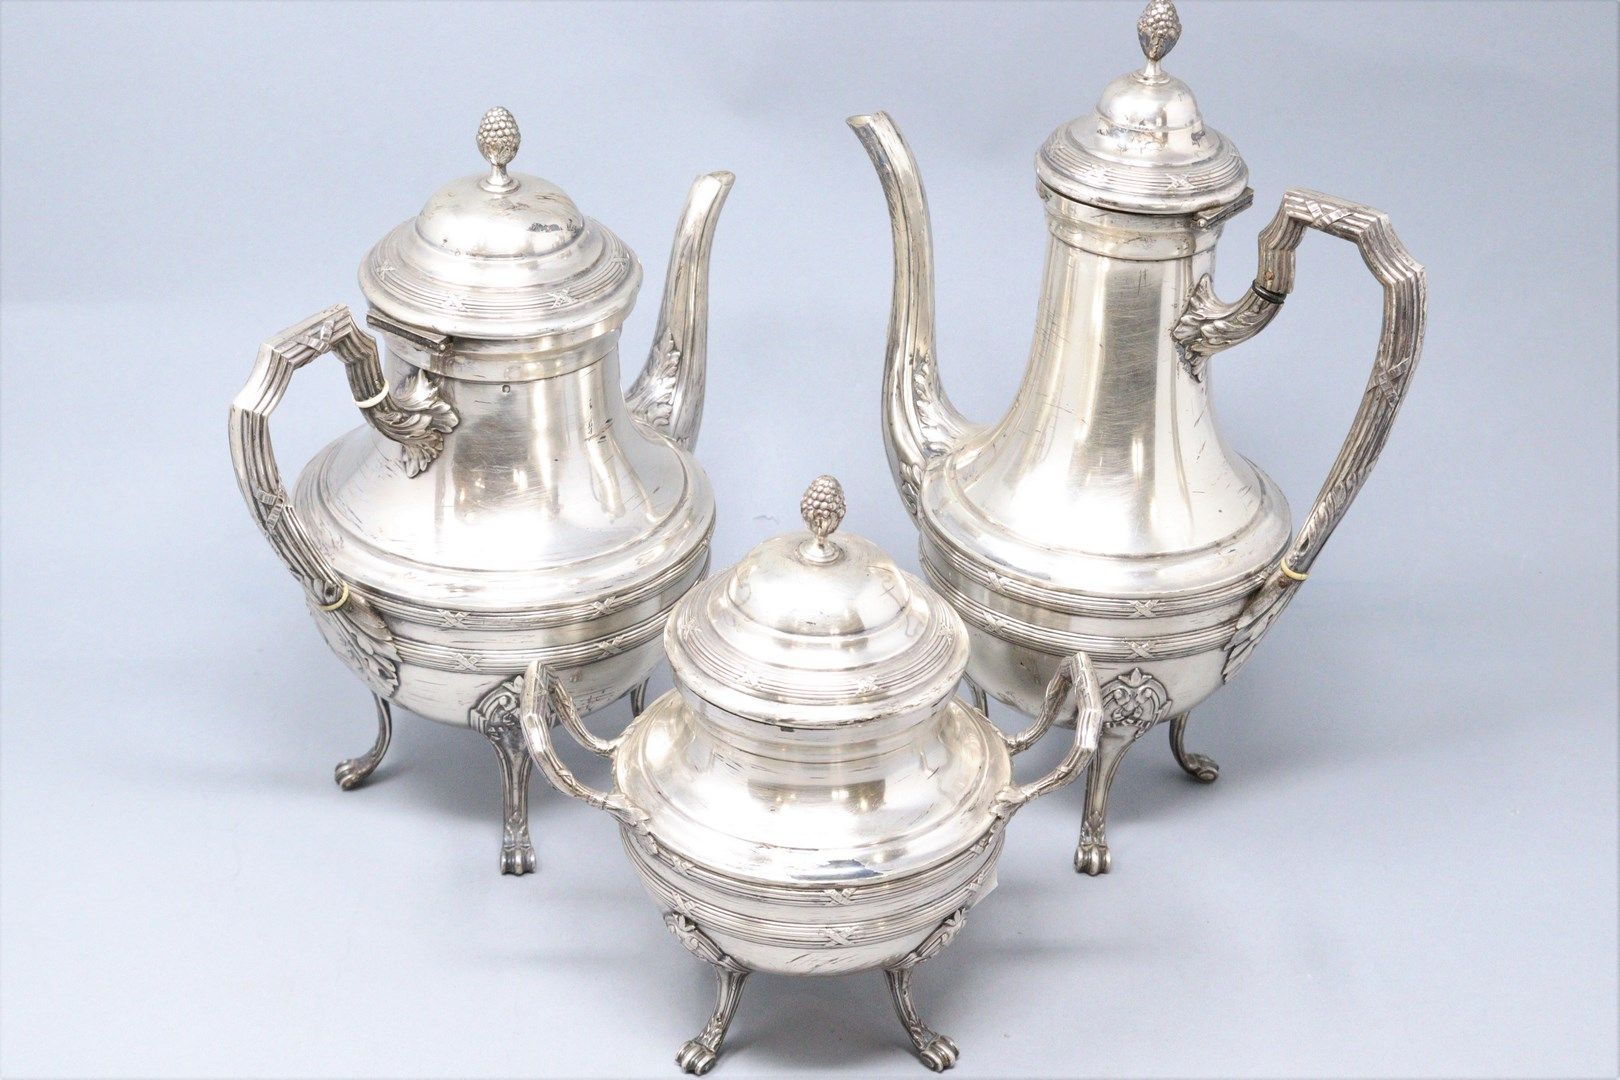 Null 银质茶和咖啡套装，包括: 

- 茶壶 

- 一个巧克力壶

- 糖碗

钉子

重量：1640克。